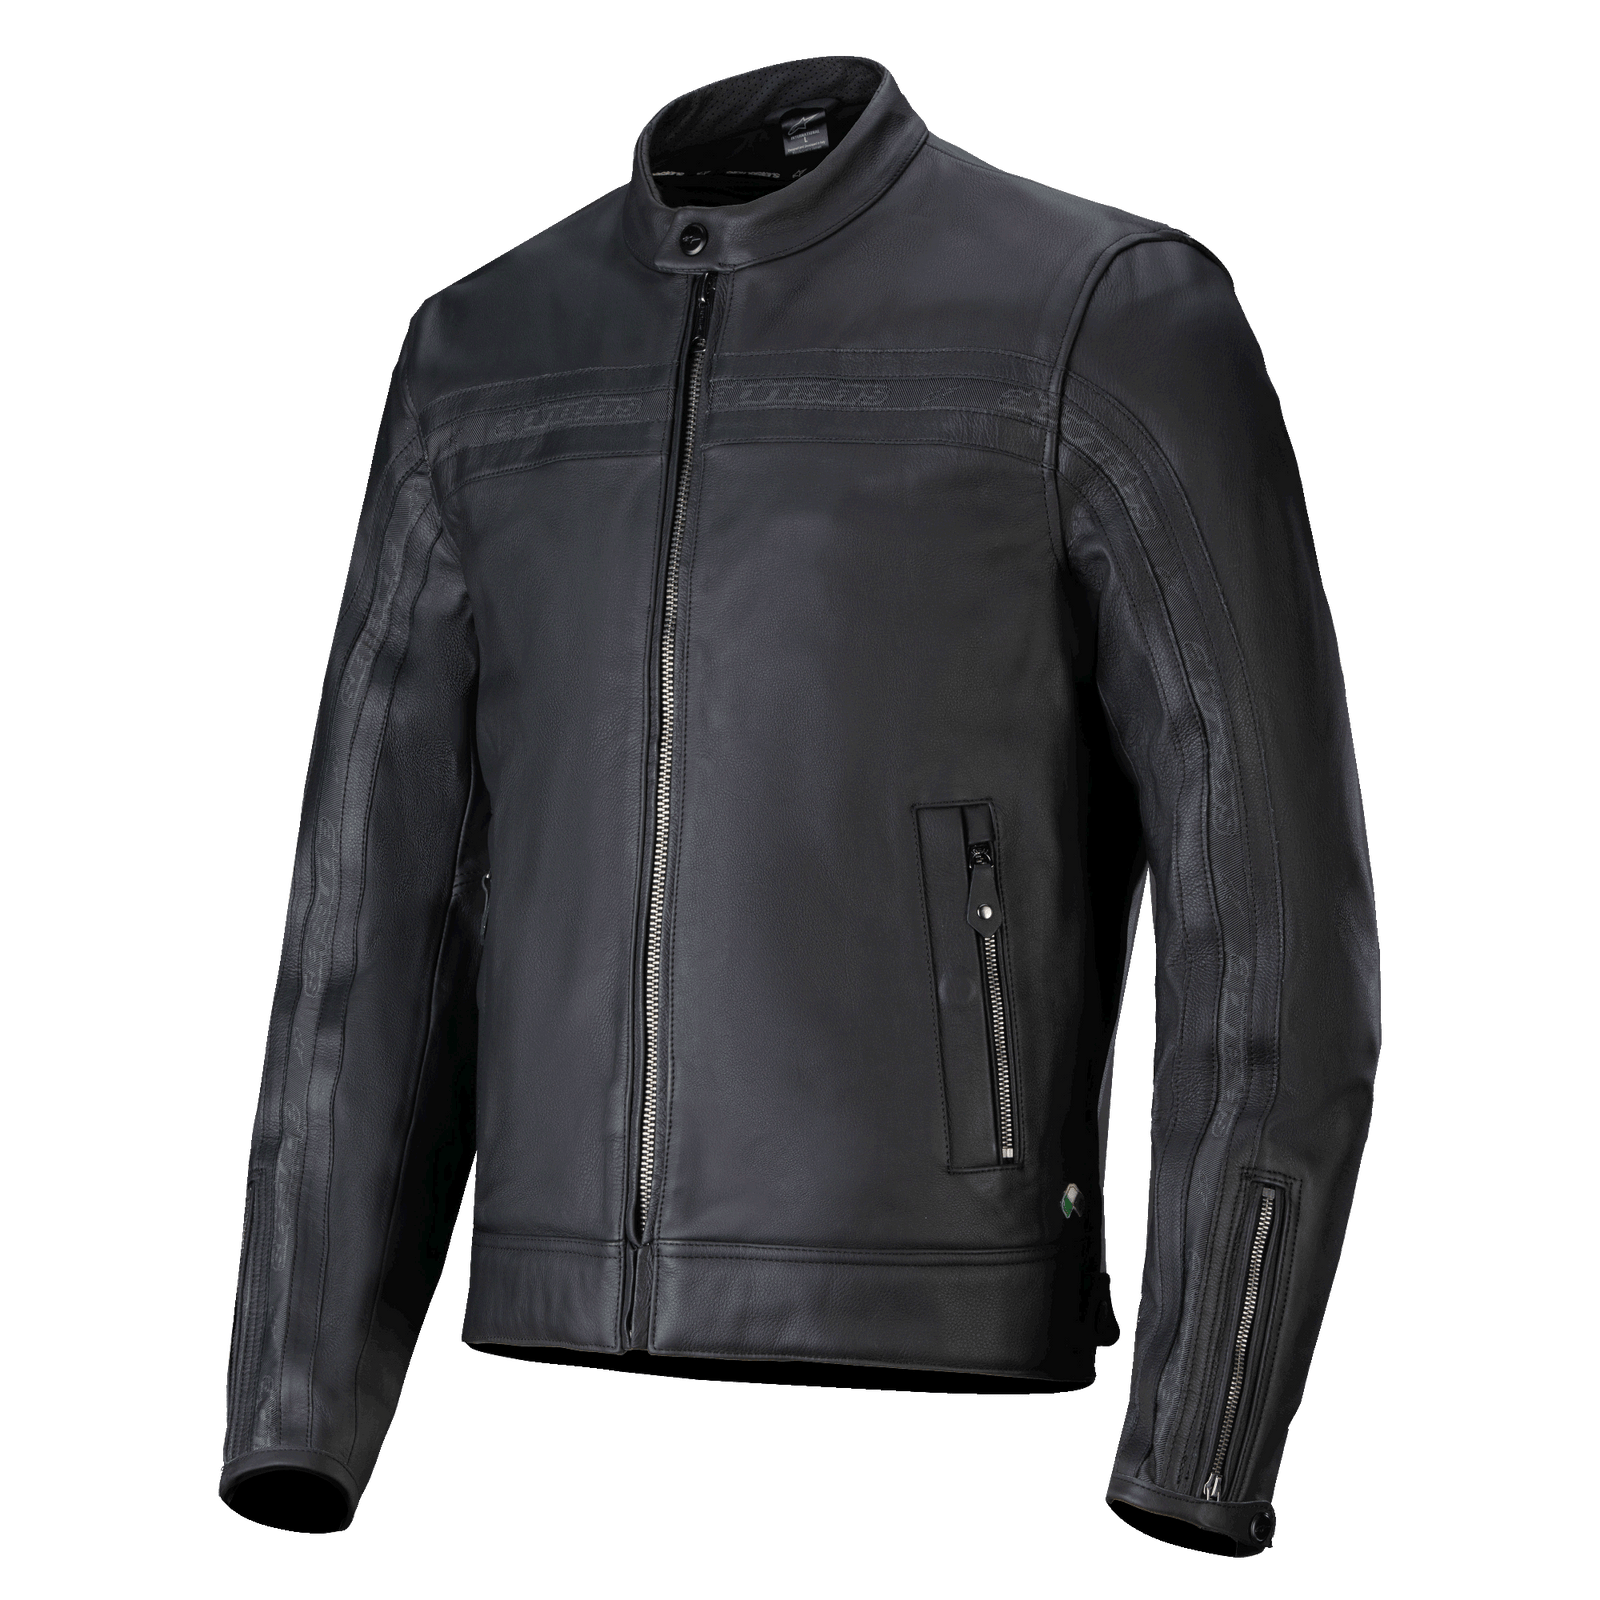 Dyno Leather Jacket